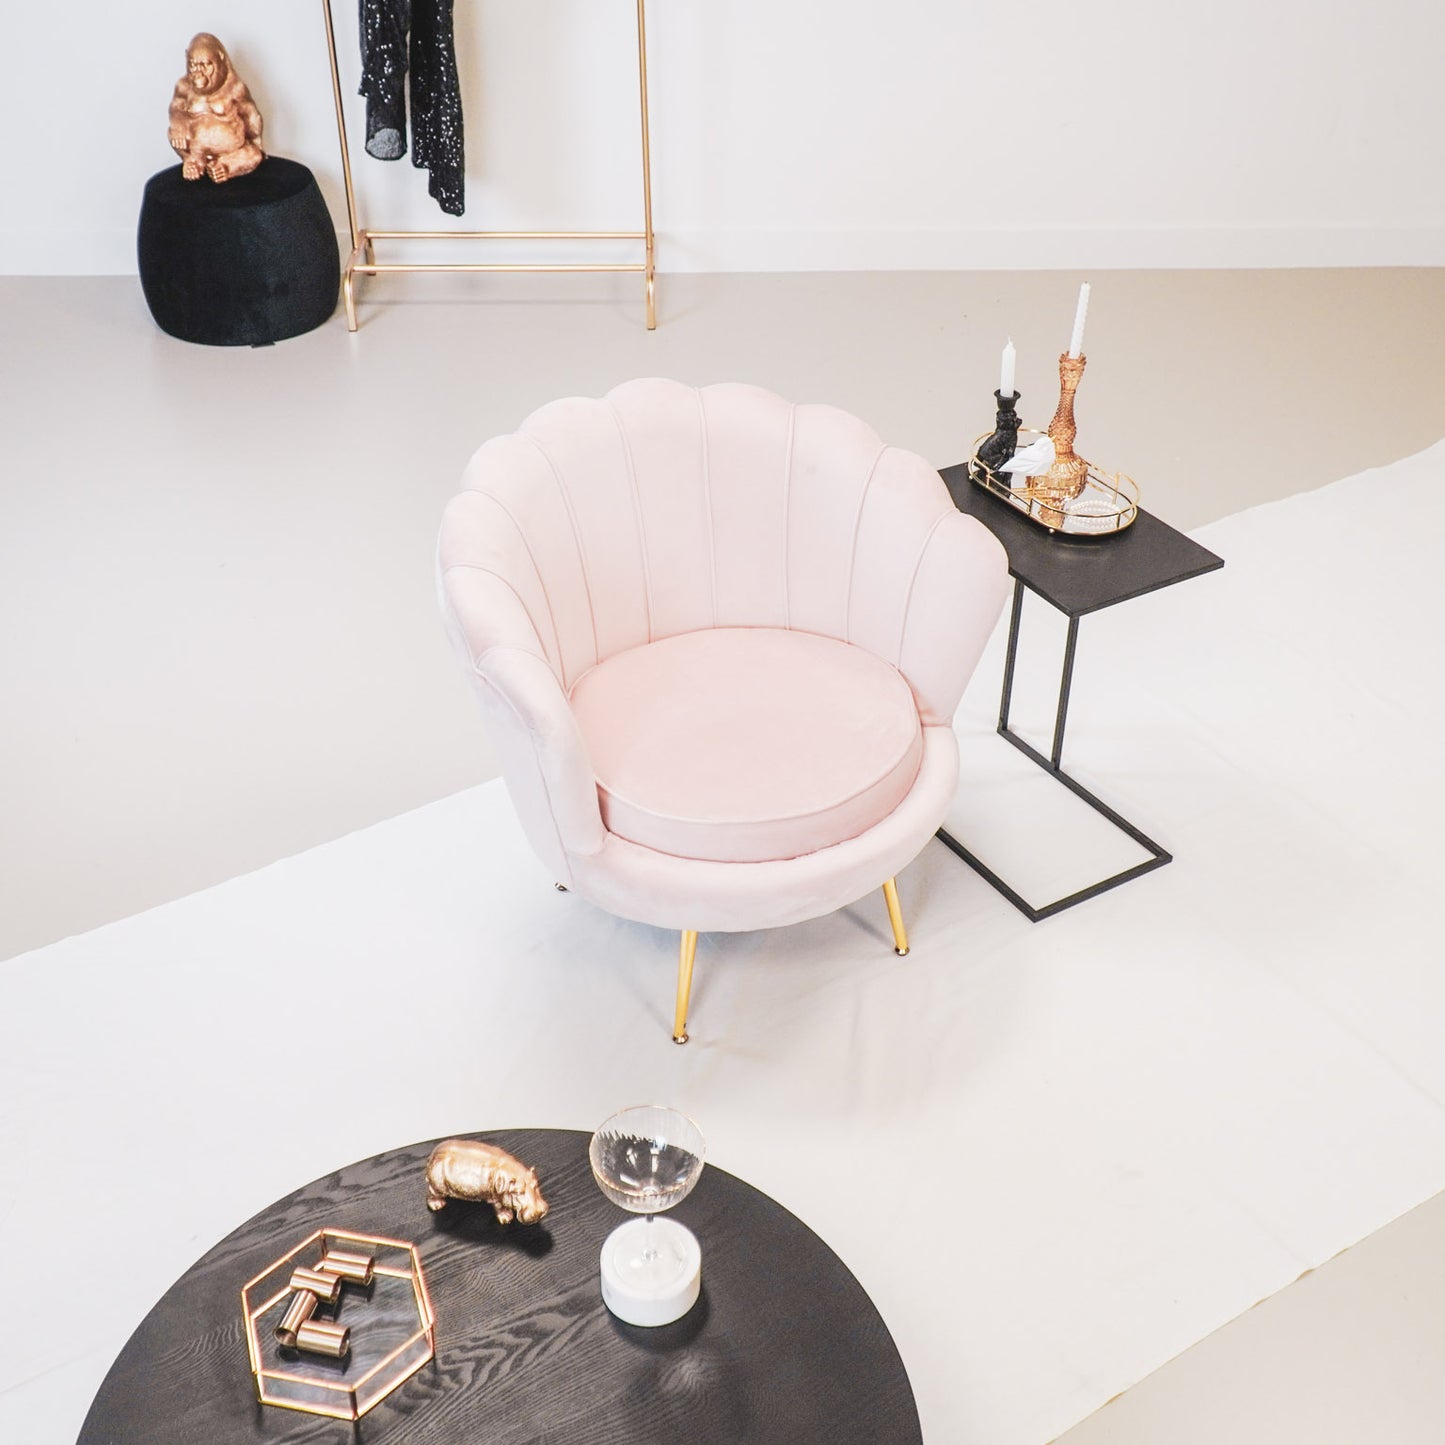 HV Fauteuil Chair Shell - Light Pink